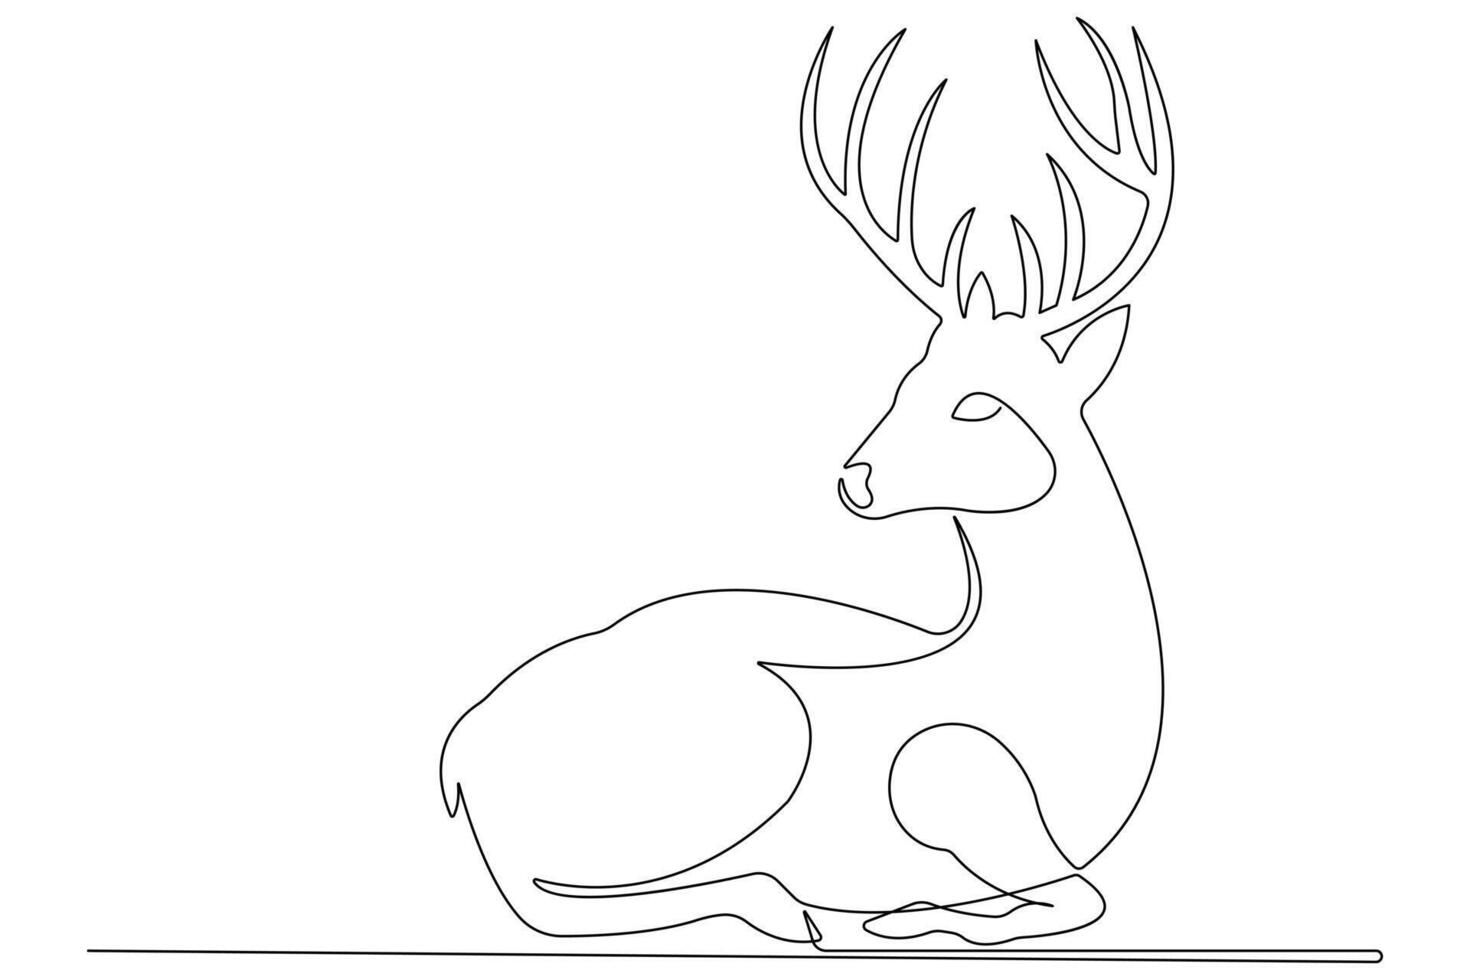 kontinuerlig ett linje konst teckning av vild djur- rådjur översikt illustration vektor